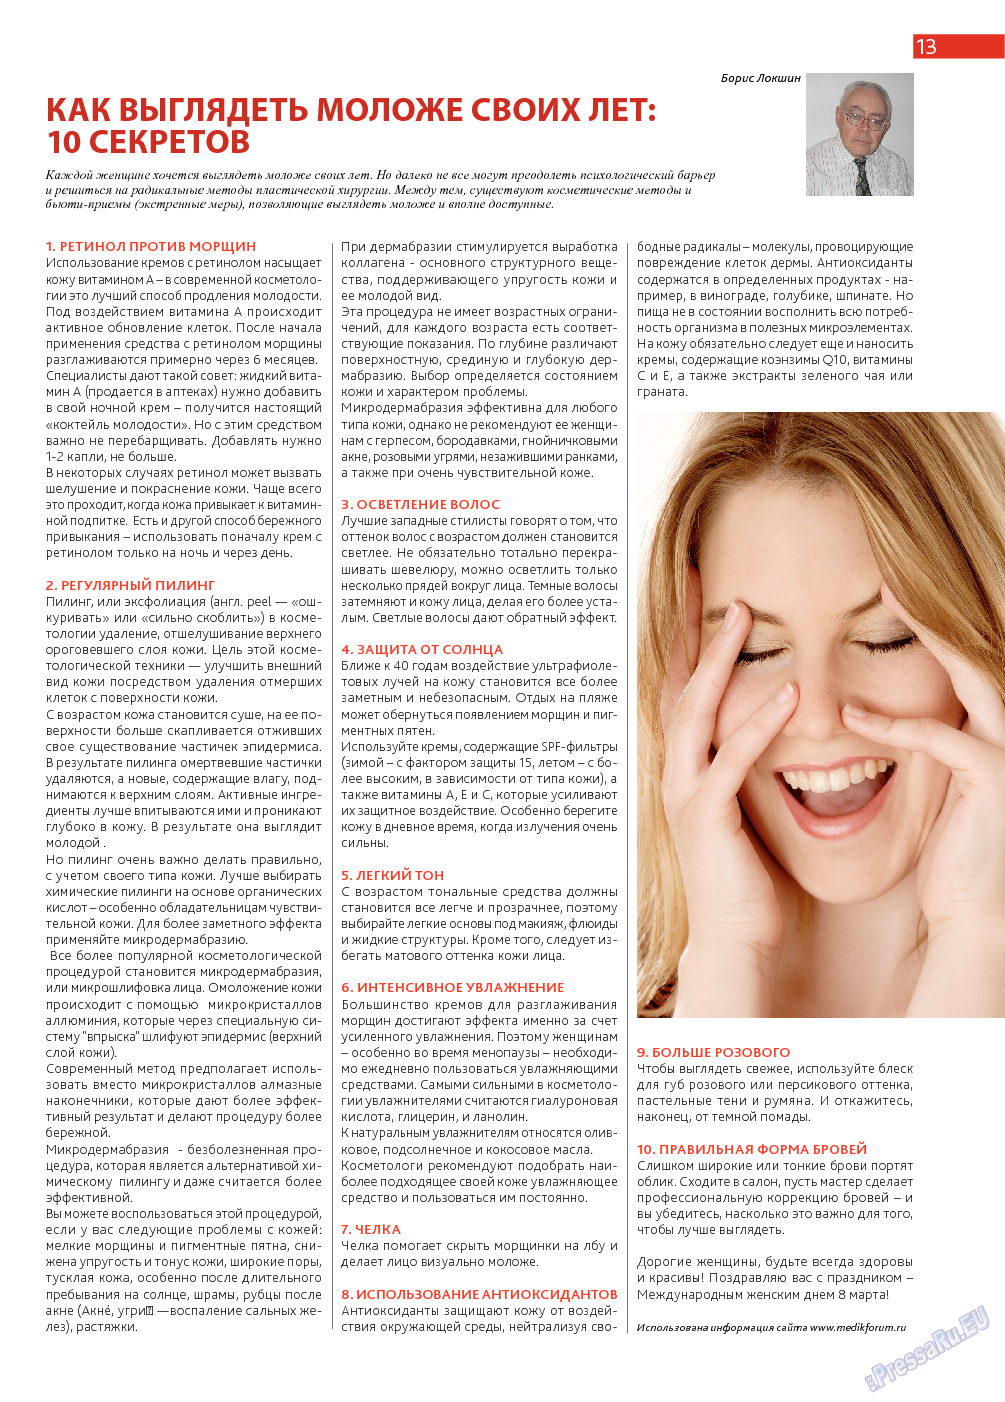 Афиша Augsburg, журнал. 2014 №3 стр.13